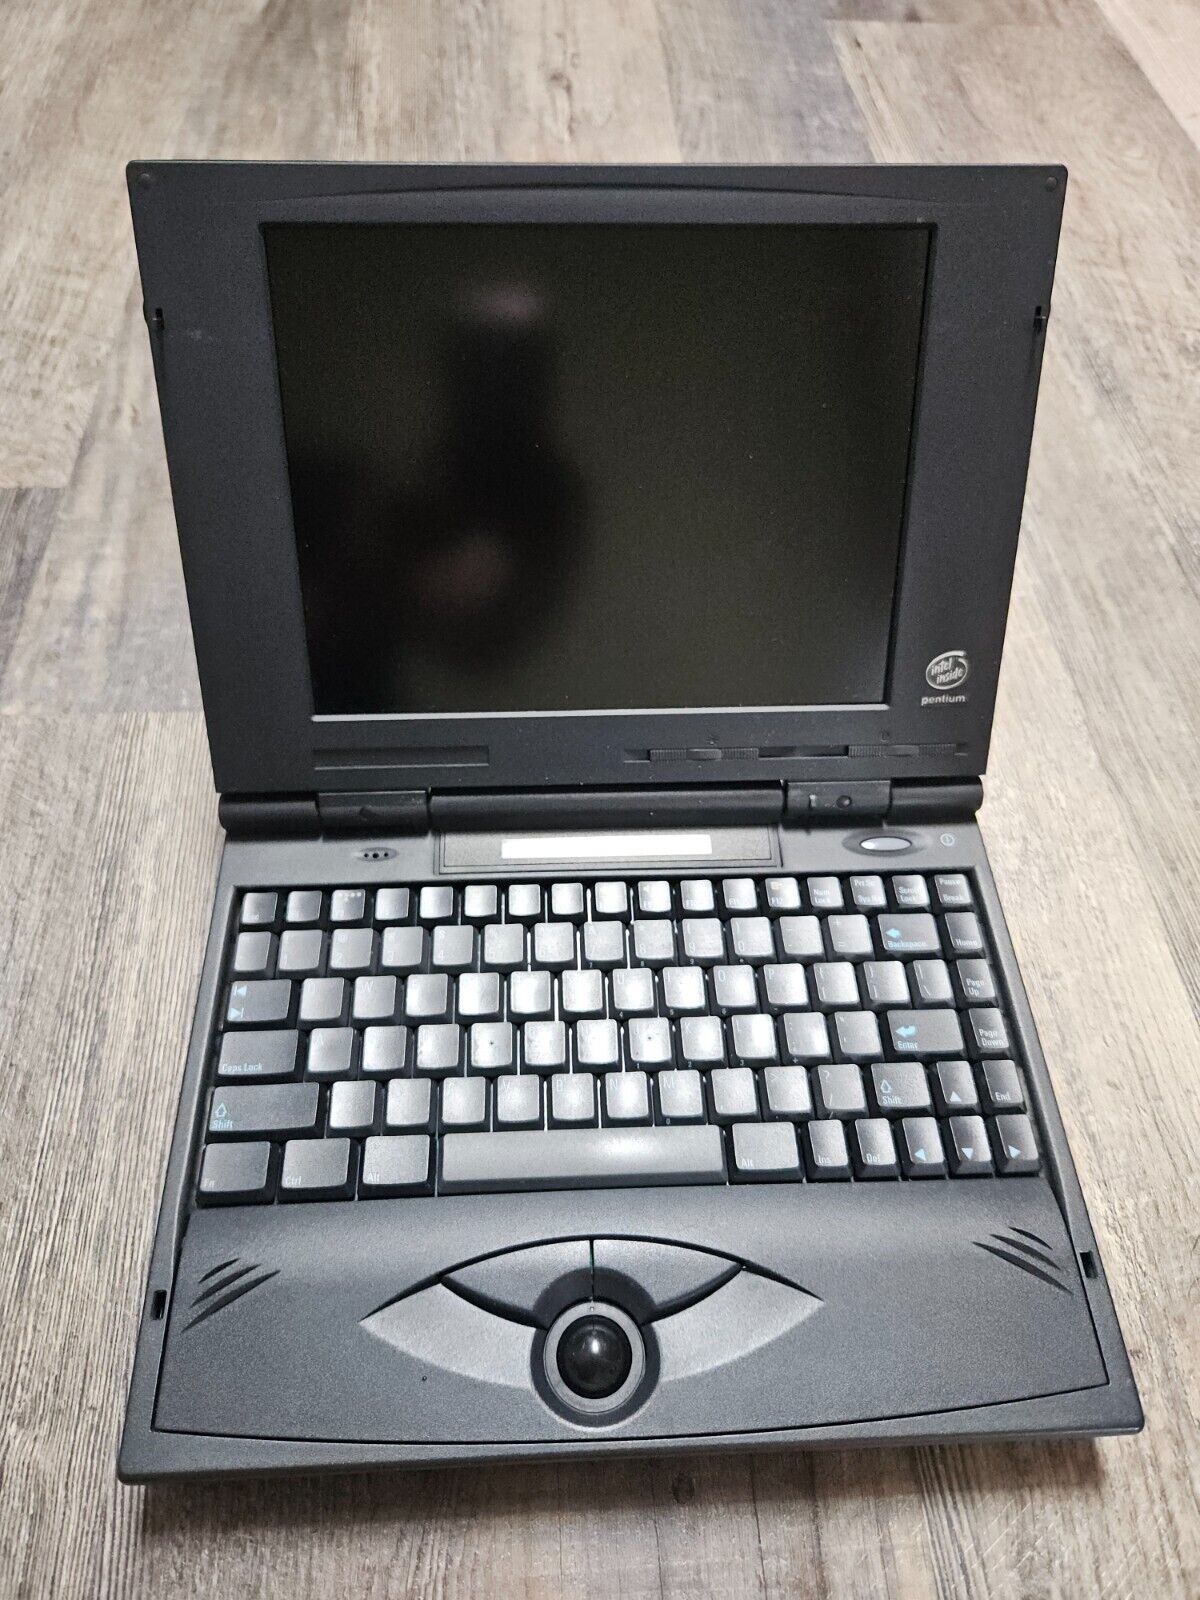 Vintage Untested Hewlett Packard HP OmniBook Laptop? For Repair